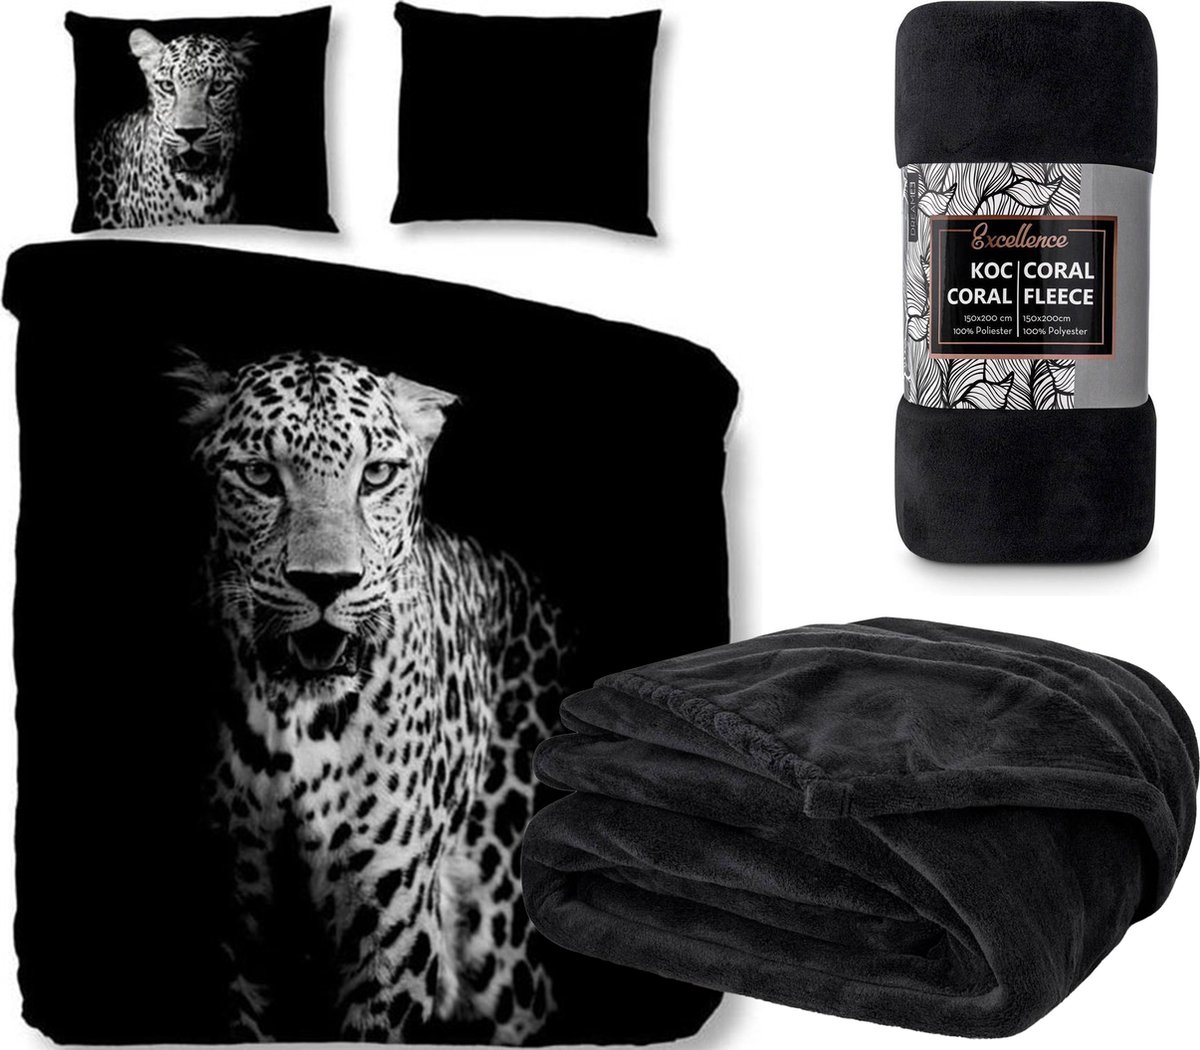 Dekbedovertrek zwart- Luipaard- 140x200/220cm- 100% microvezel- incl. warme fleece-deken zwart- 150x200cm!